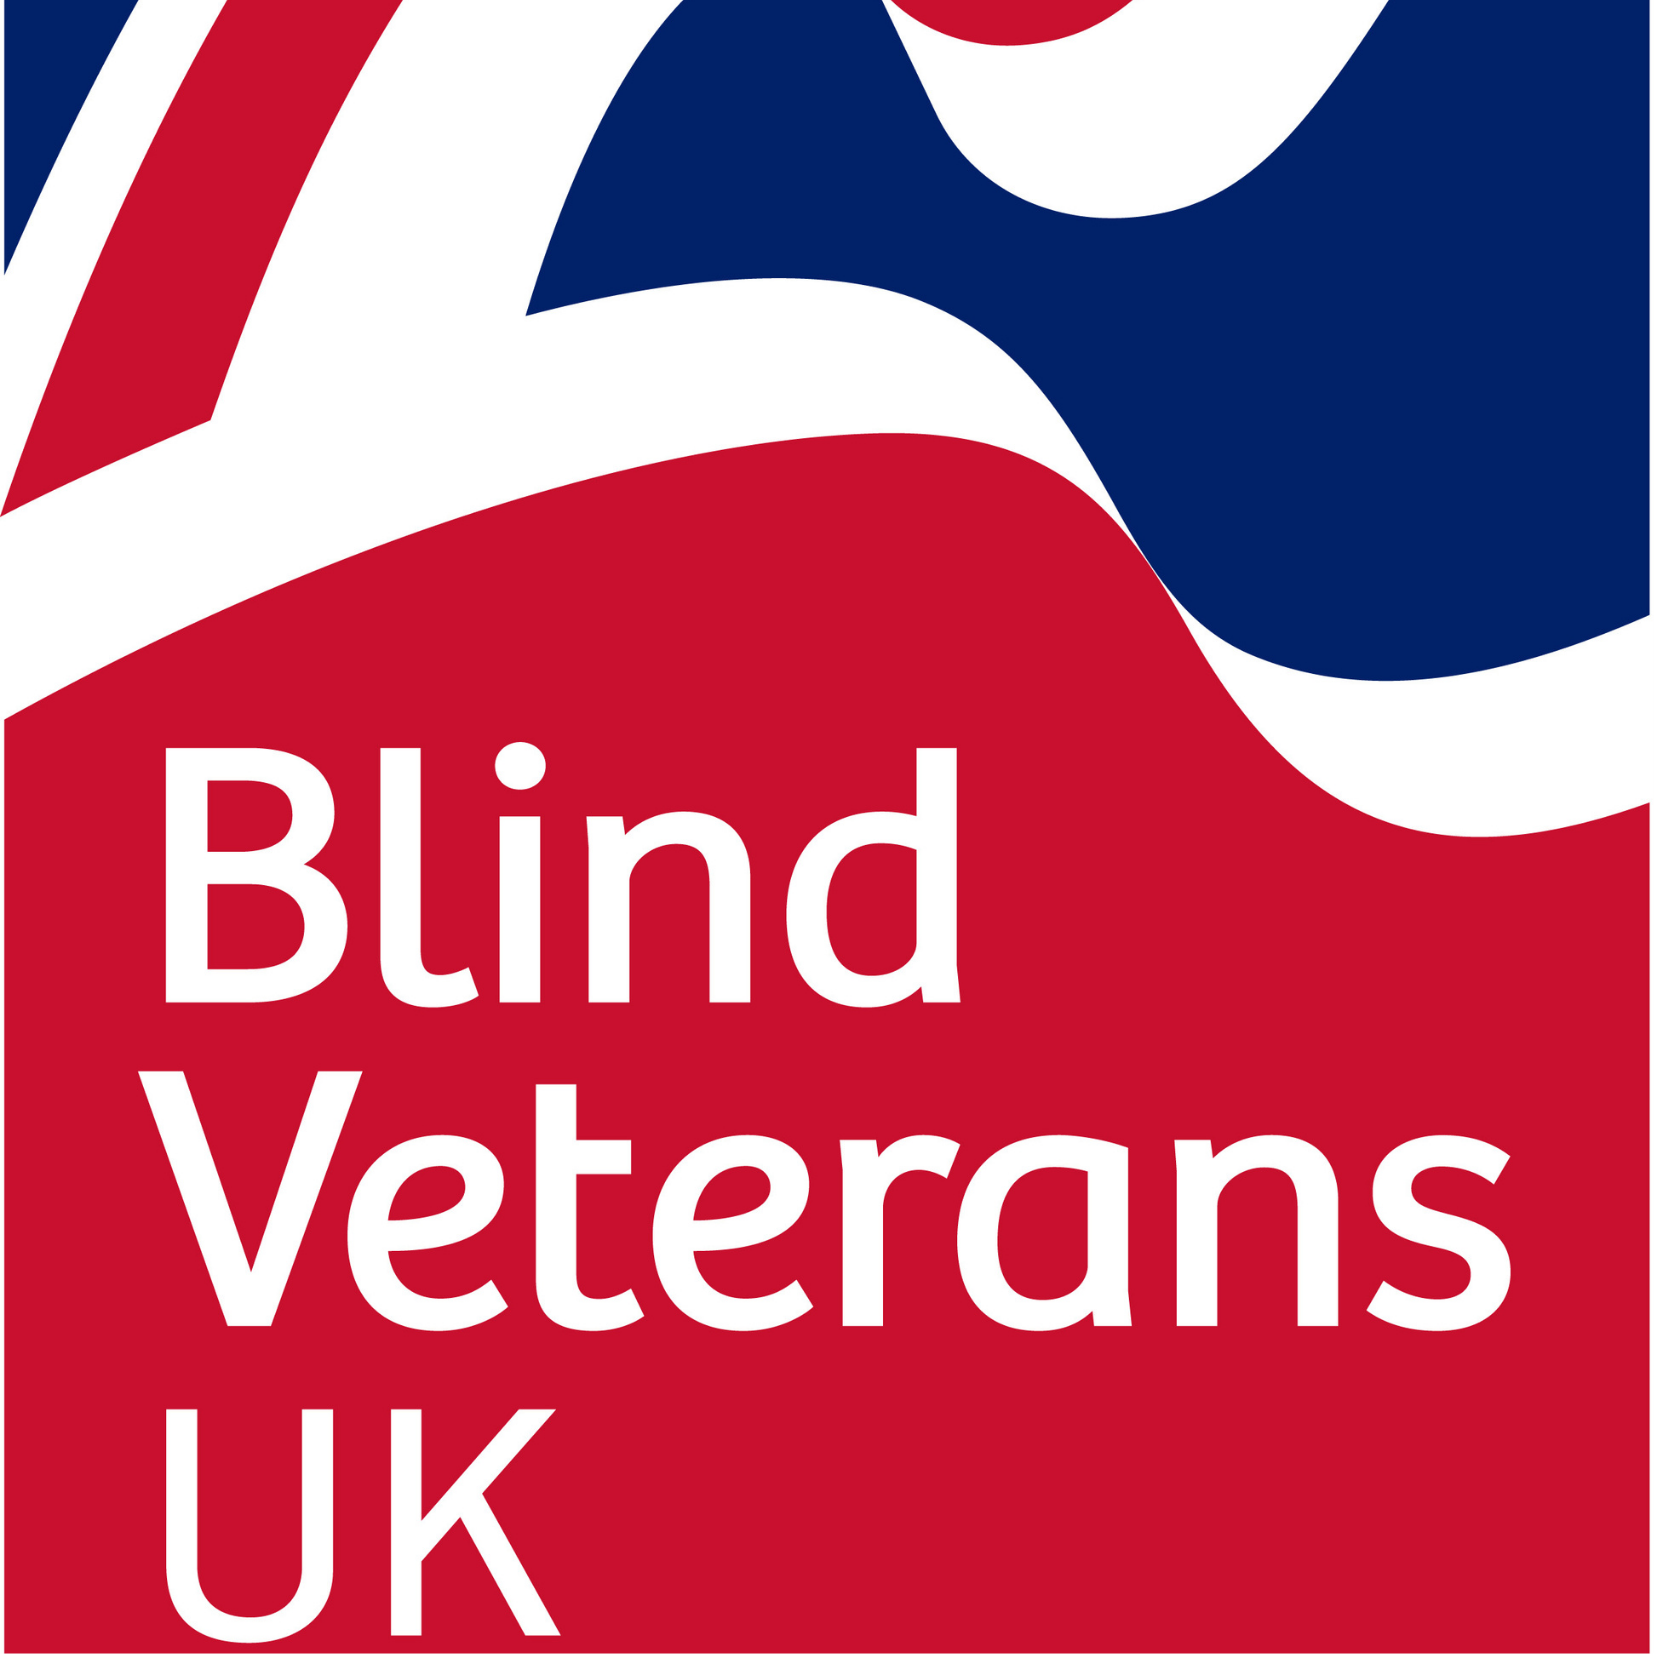 Blind Veterans UK charity